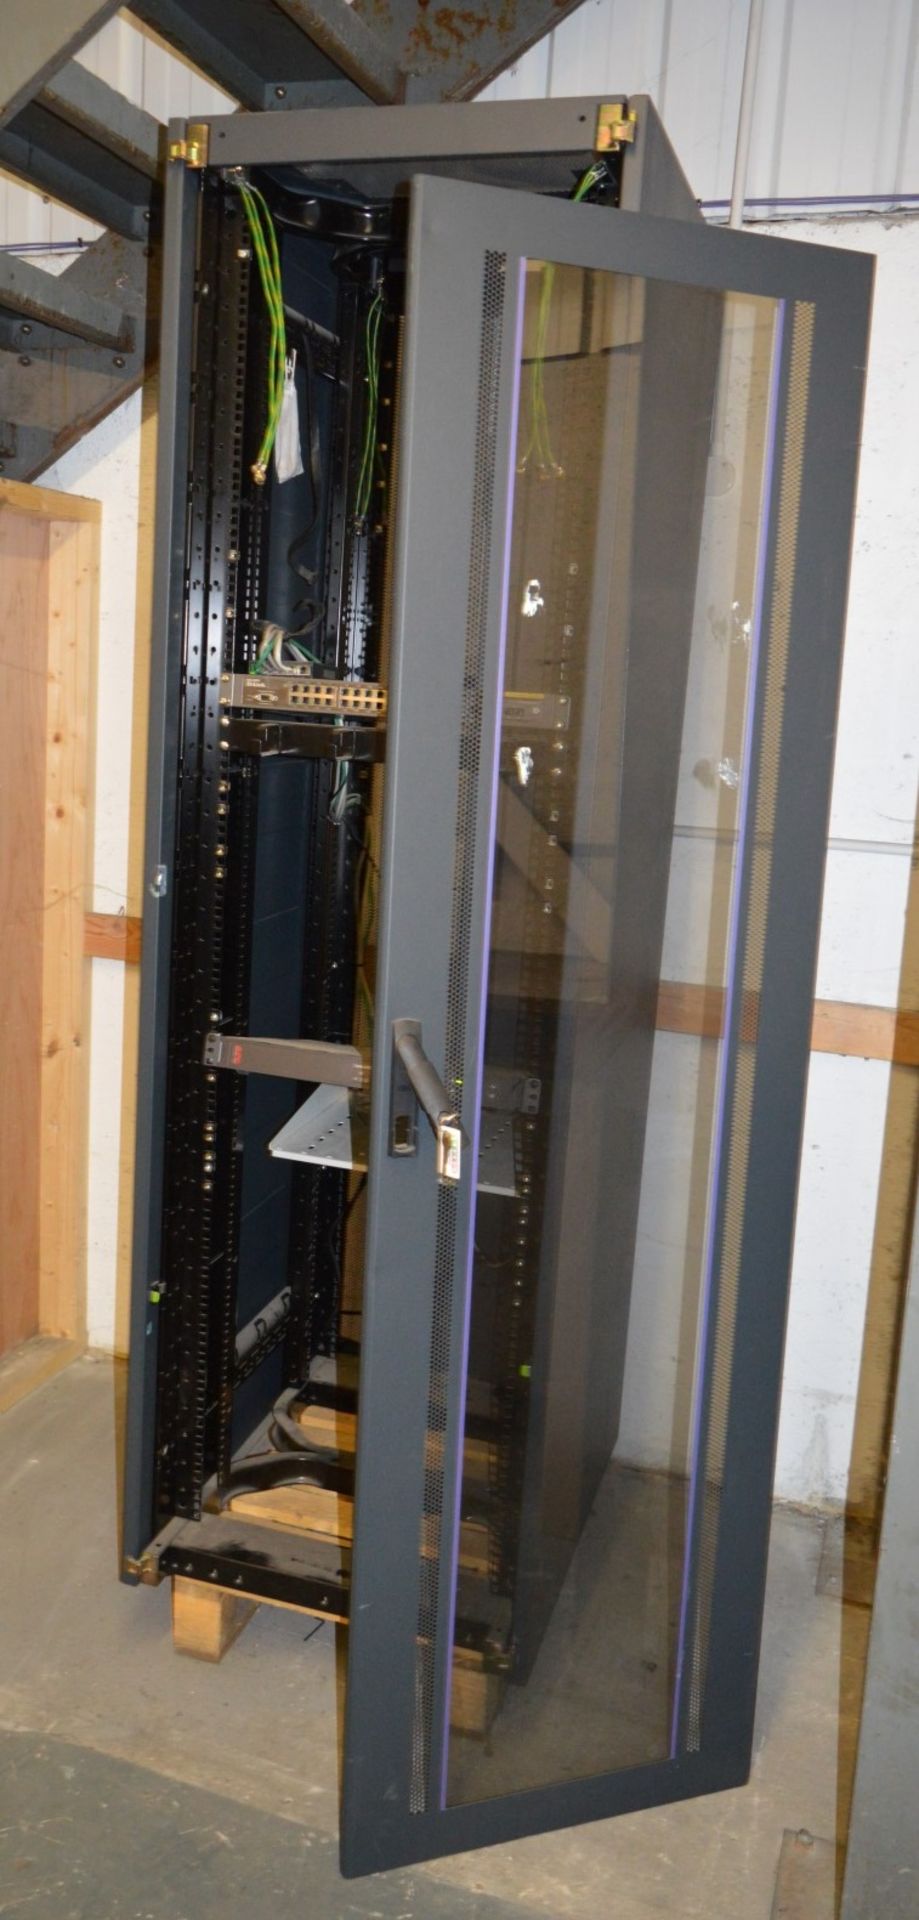 1 x Server Enclosure With Door - Door Not Attached - H200 x W60 x D75 cm - CL300 - Ref 423 - - Image 2 of 2